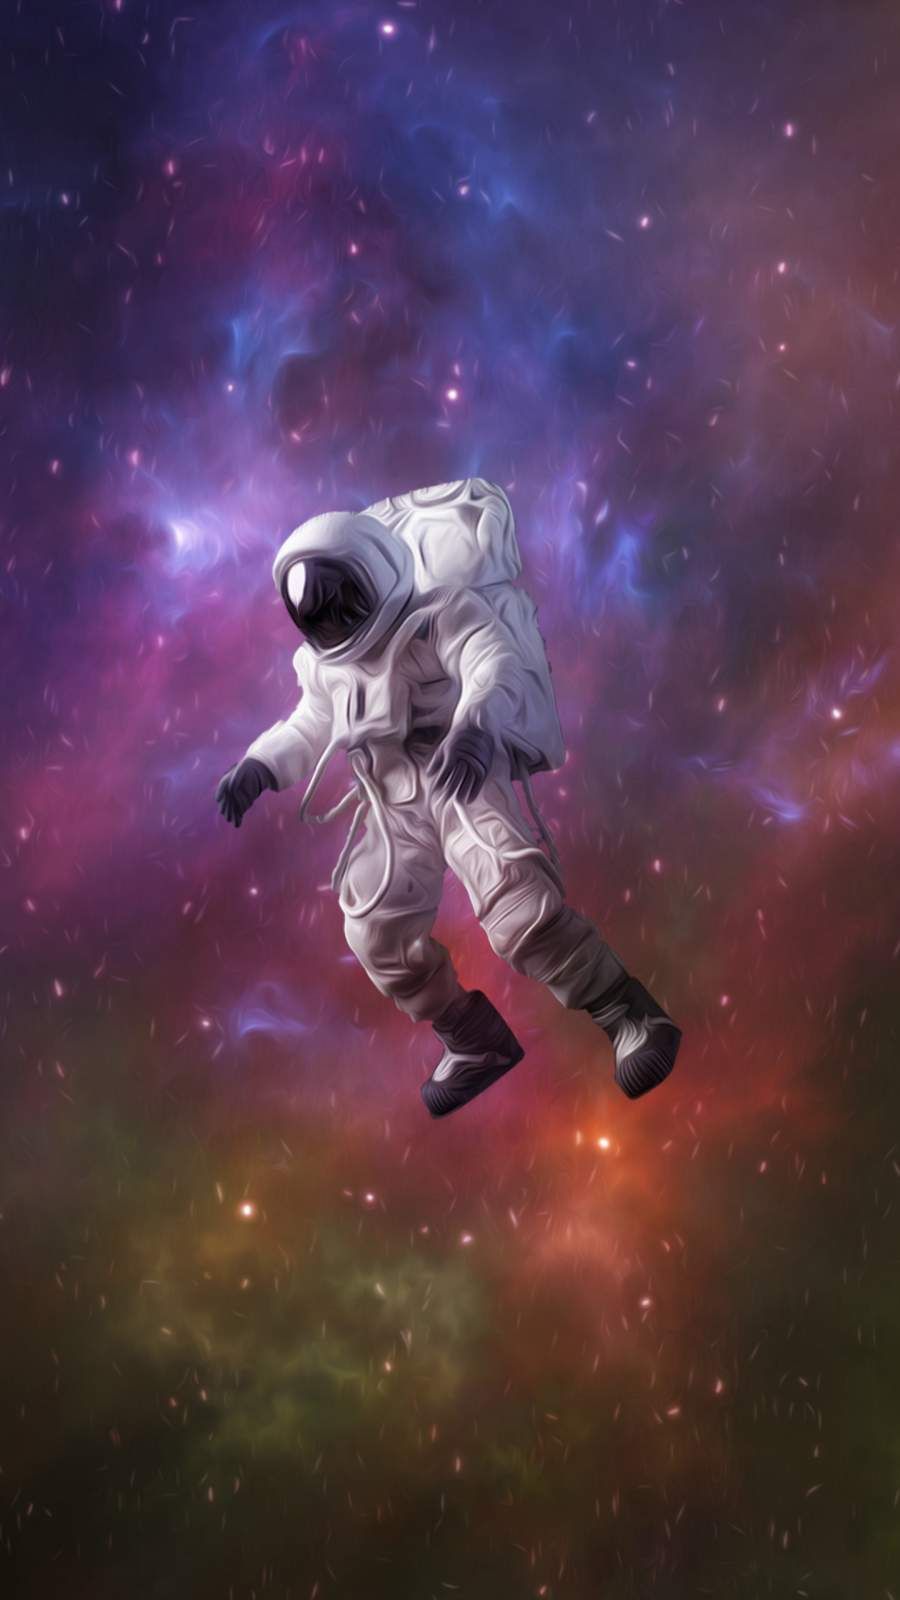 4K Astronaut iPhone Wallpaper. Astronaut wallpaper, iPhone wallpaper, Cool background for iphone